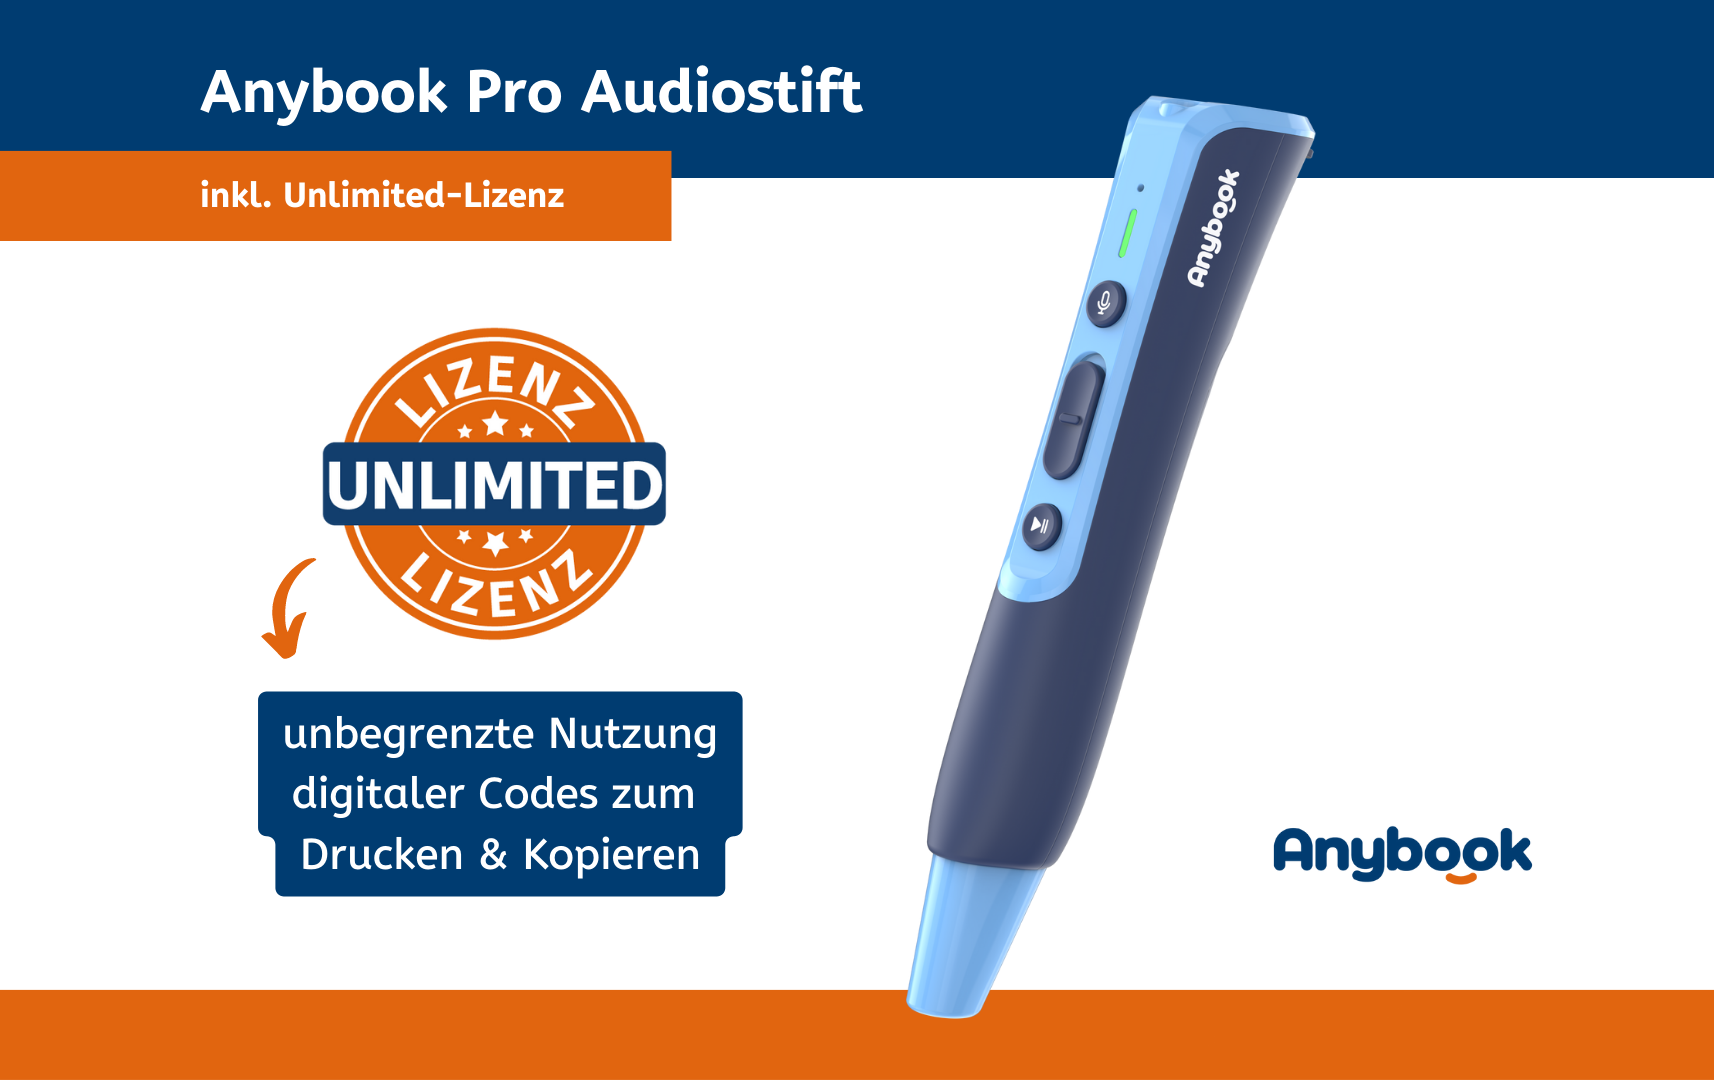 Anybook Pro Audiostift inkl. Voucher für Unlimited-Lizenz